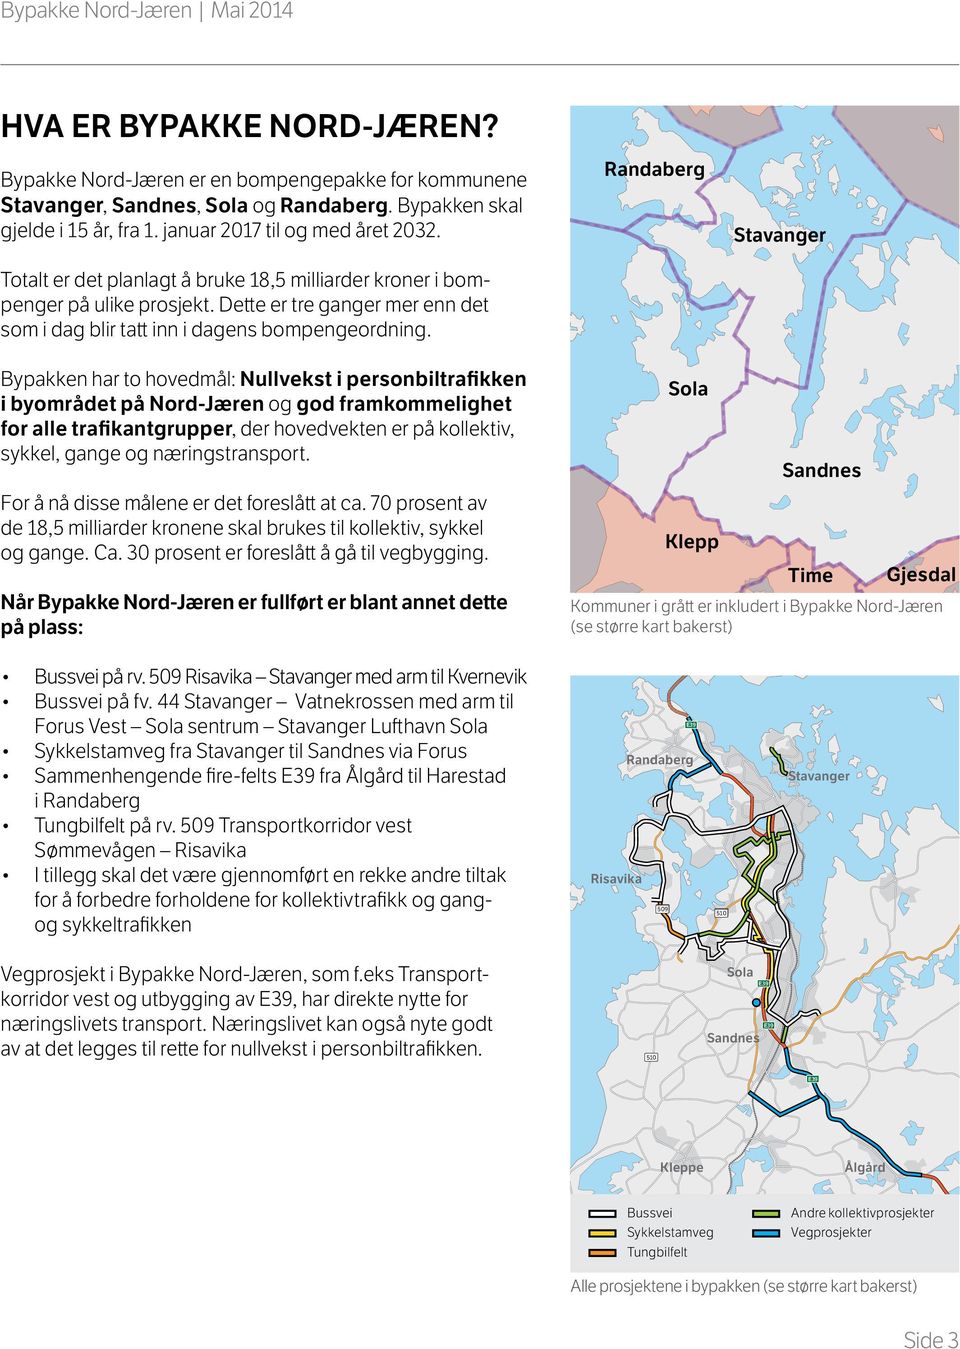 Bypakken har to hovedmål: Nullvekst i personbiltrafikken i byområdet på Nord-Jæren og god framkommelighet for alle trafikantgrupper, der hovedvekten er på kollektiv, sykkel, gange og næringstransport.